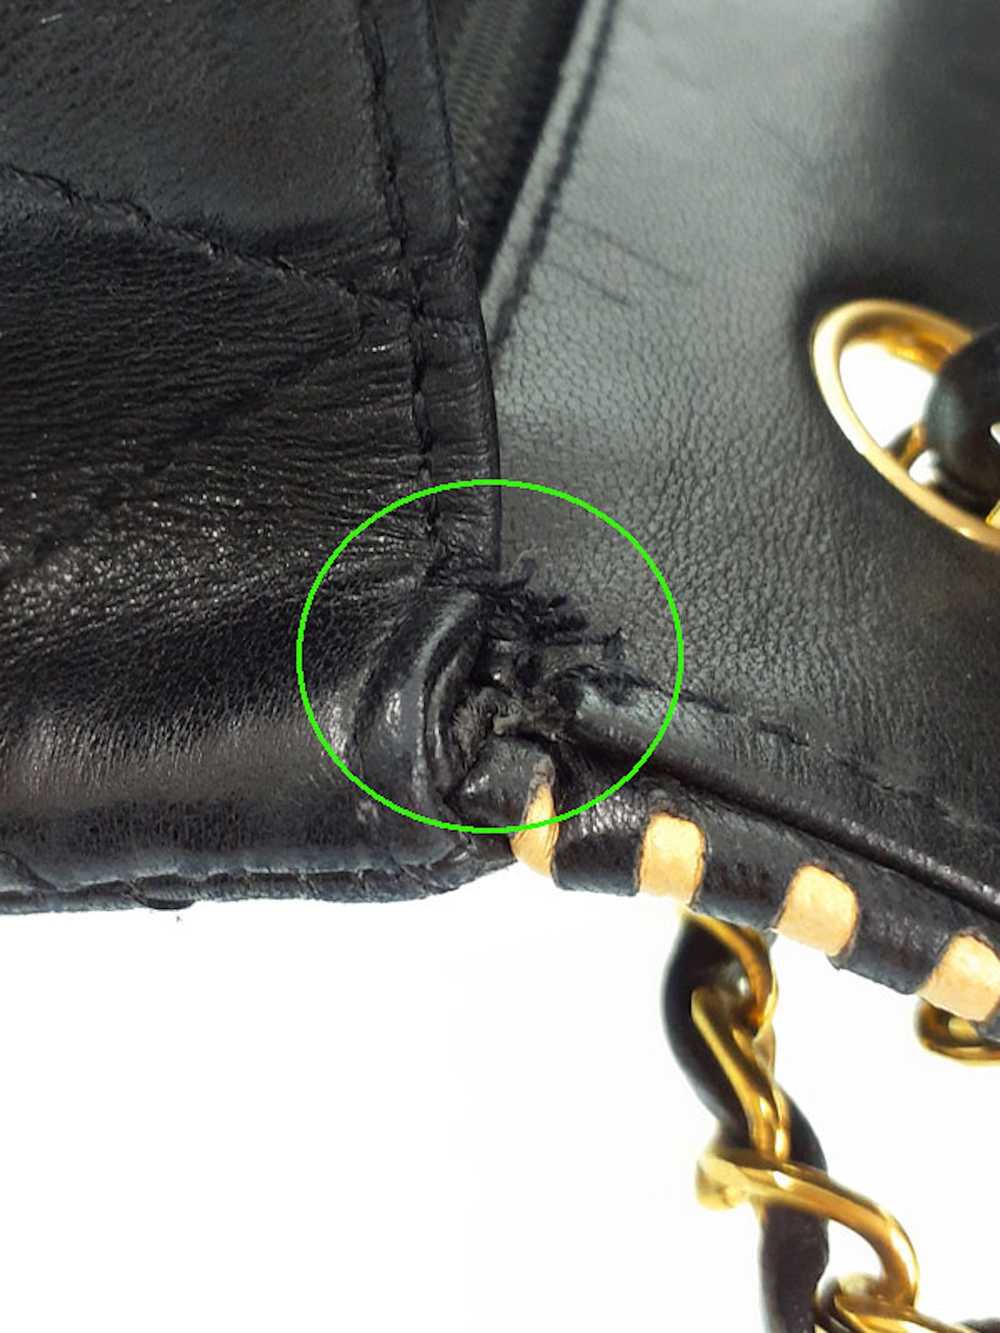 Chanel Chanel Matelasse Chain Shoulder Bag Black - image 6